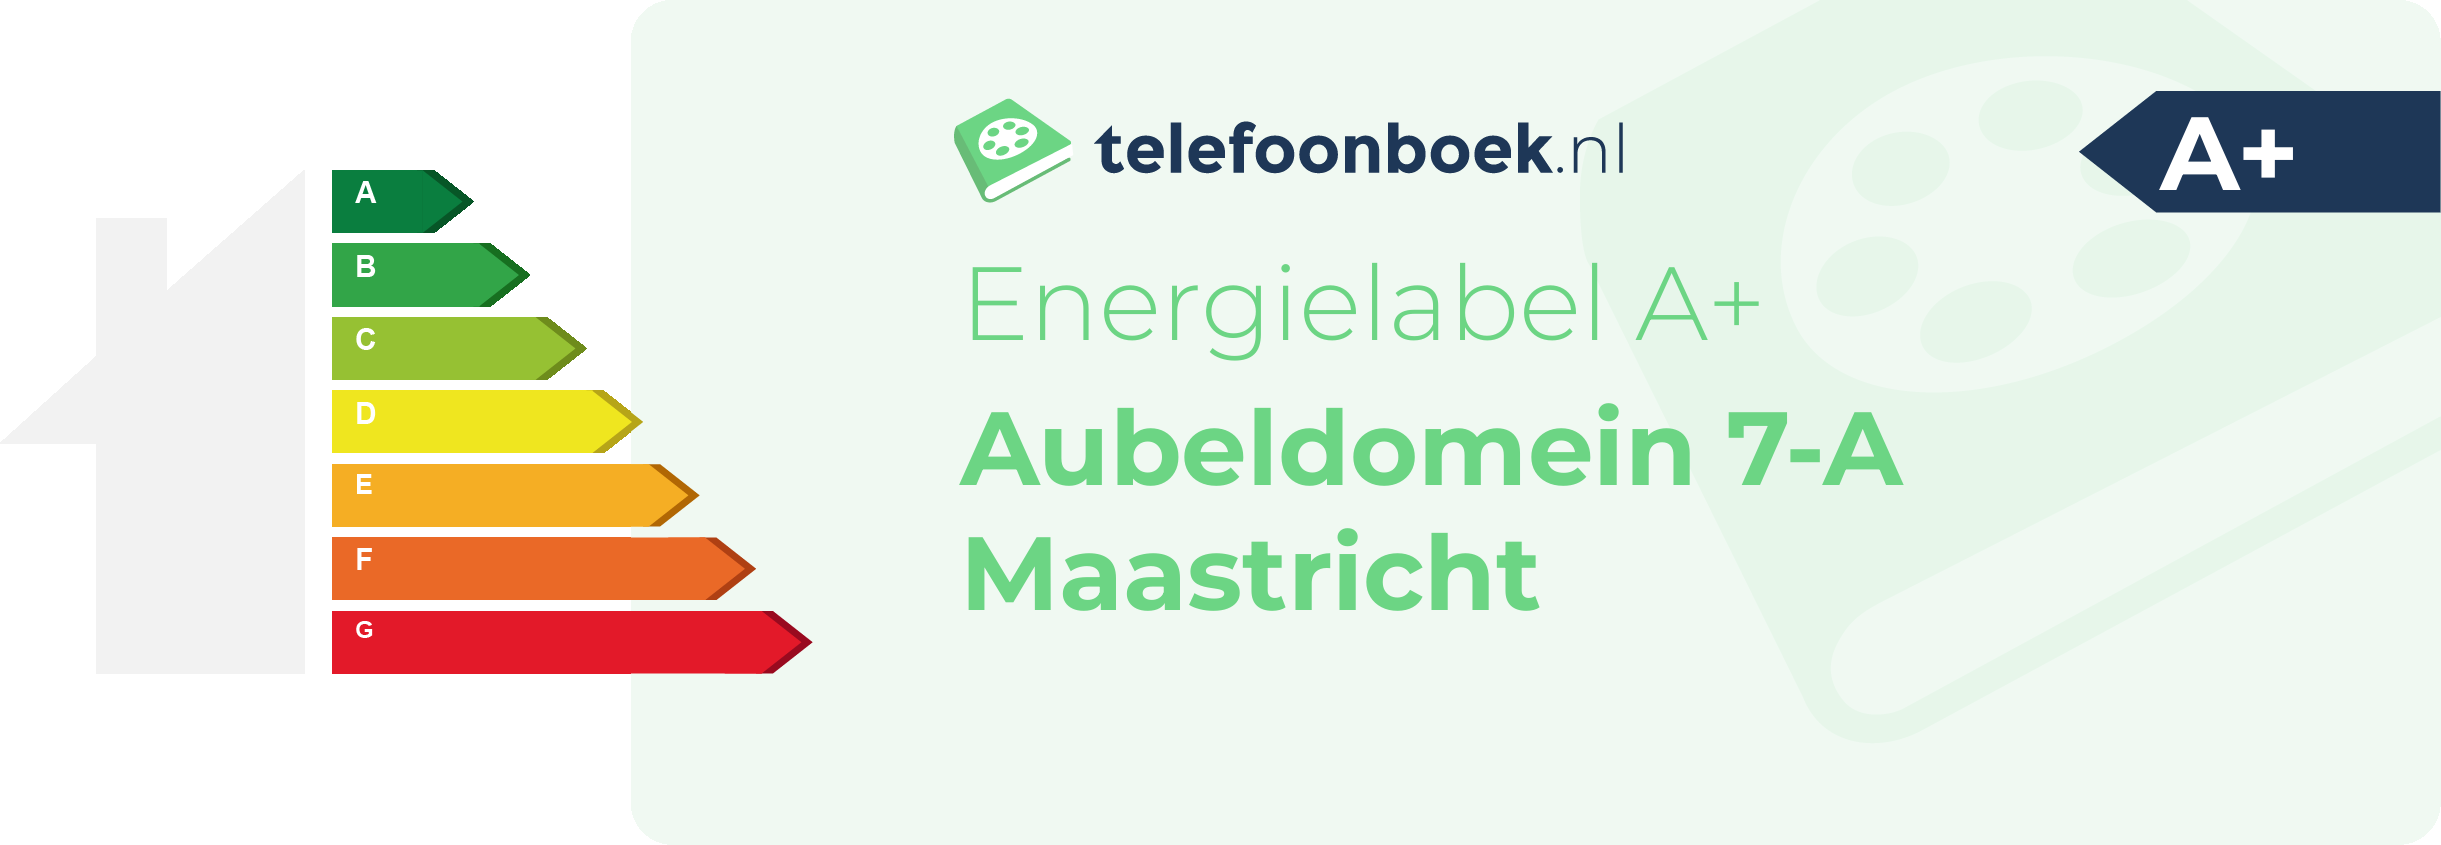 Energielabel Aubeldomein 7-A Maastricht